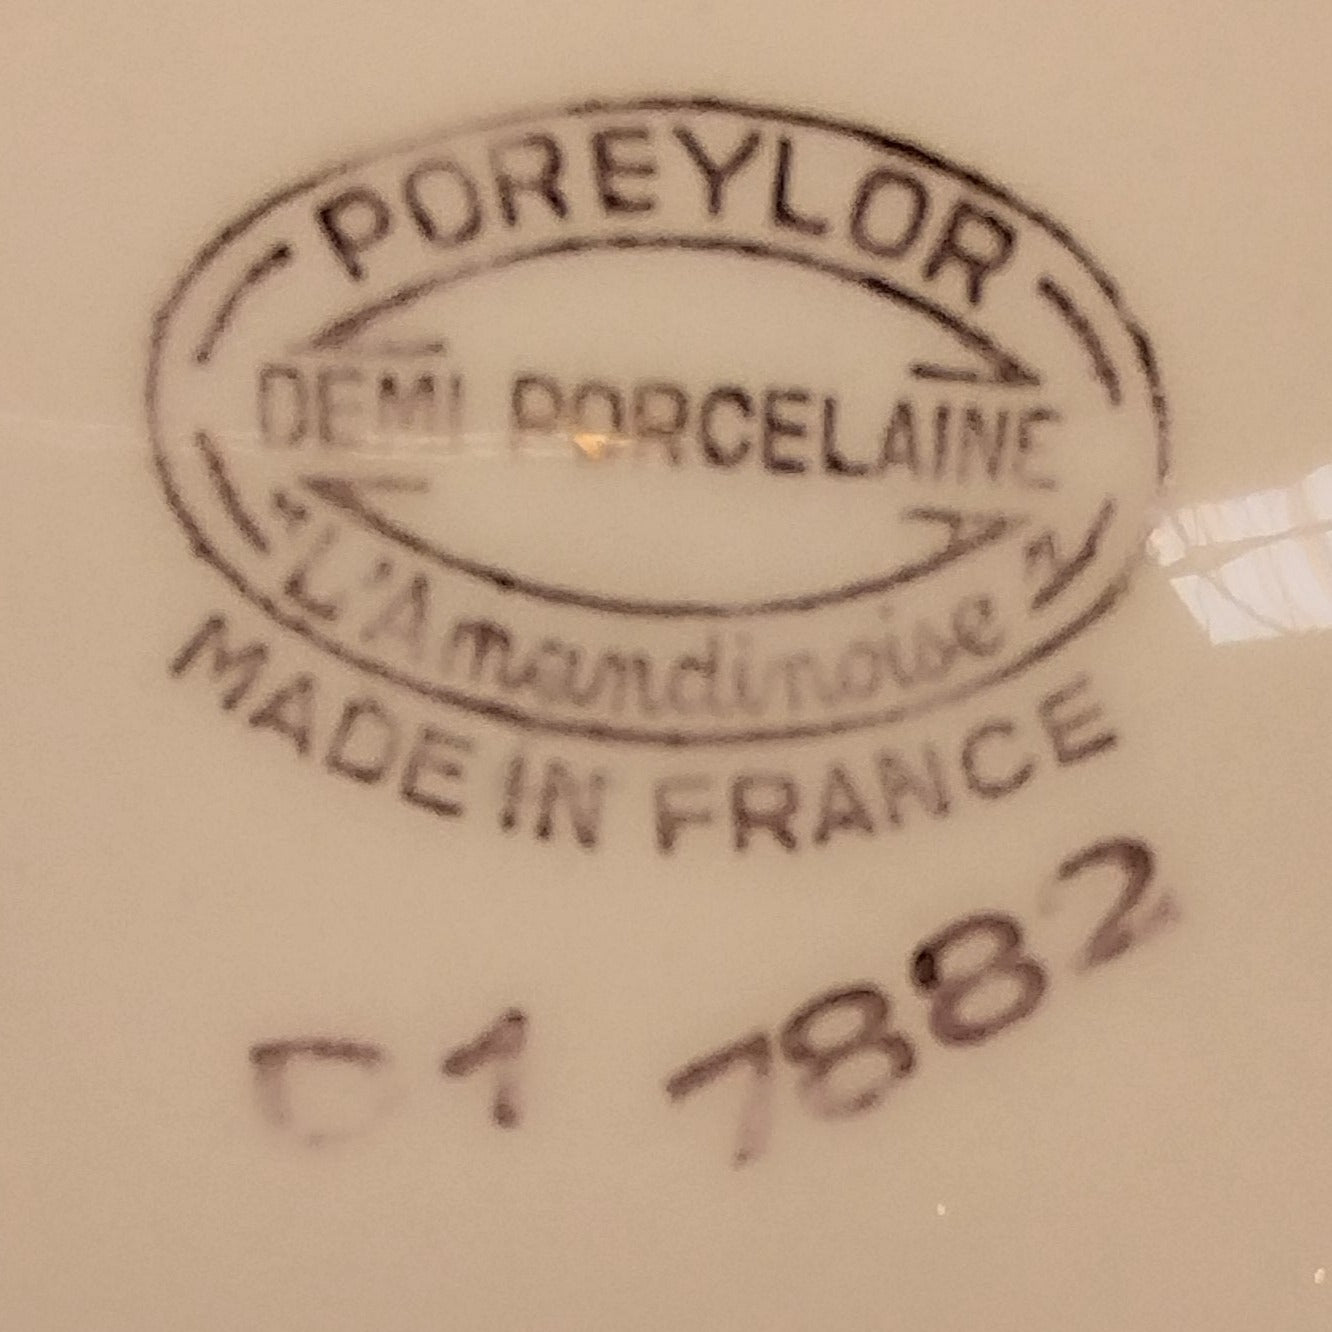 Présentoir à dessert Poreylor L'Amandinoise Années 1950/60 "Turquoise